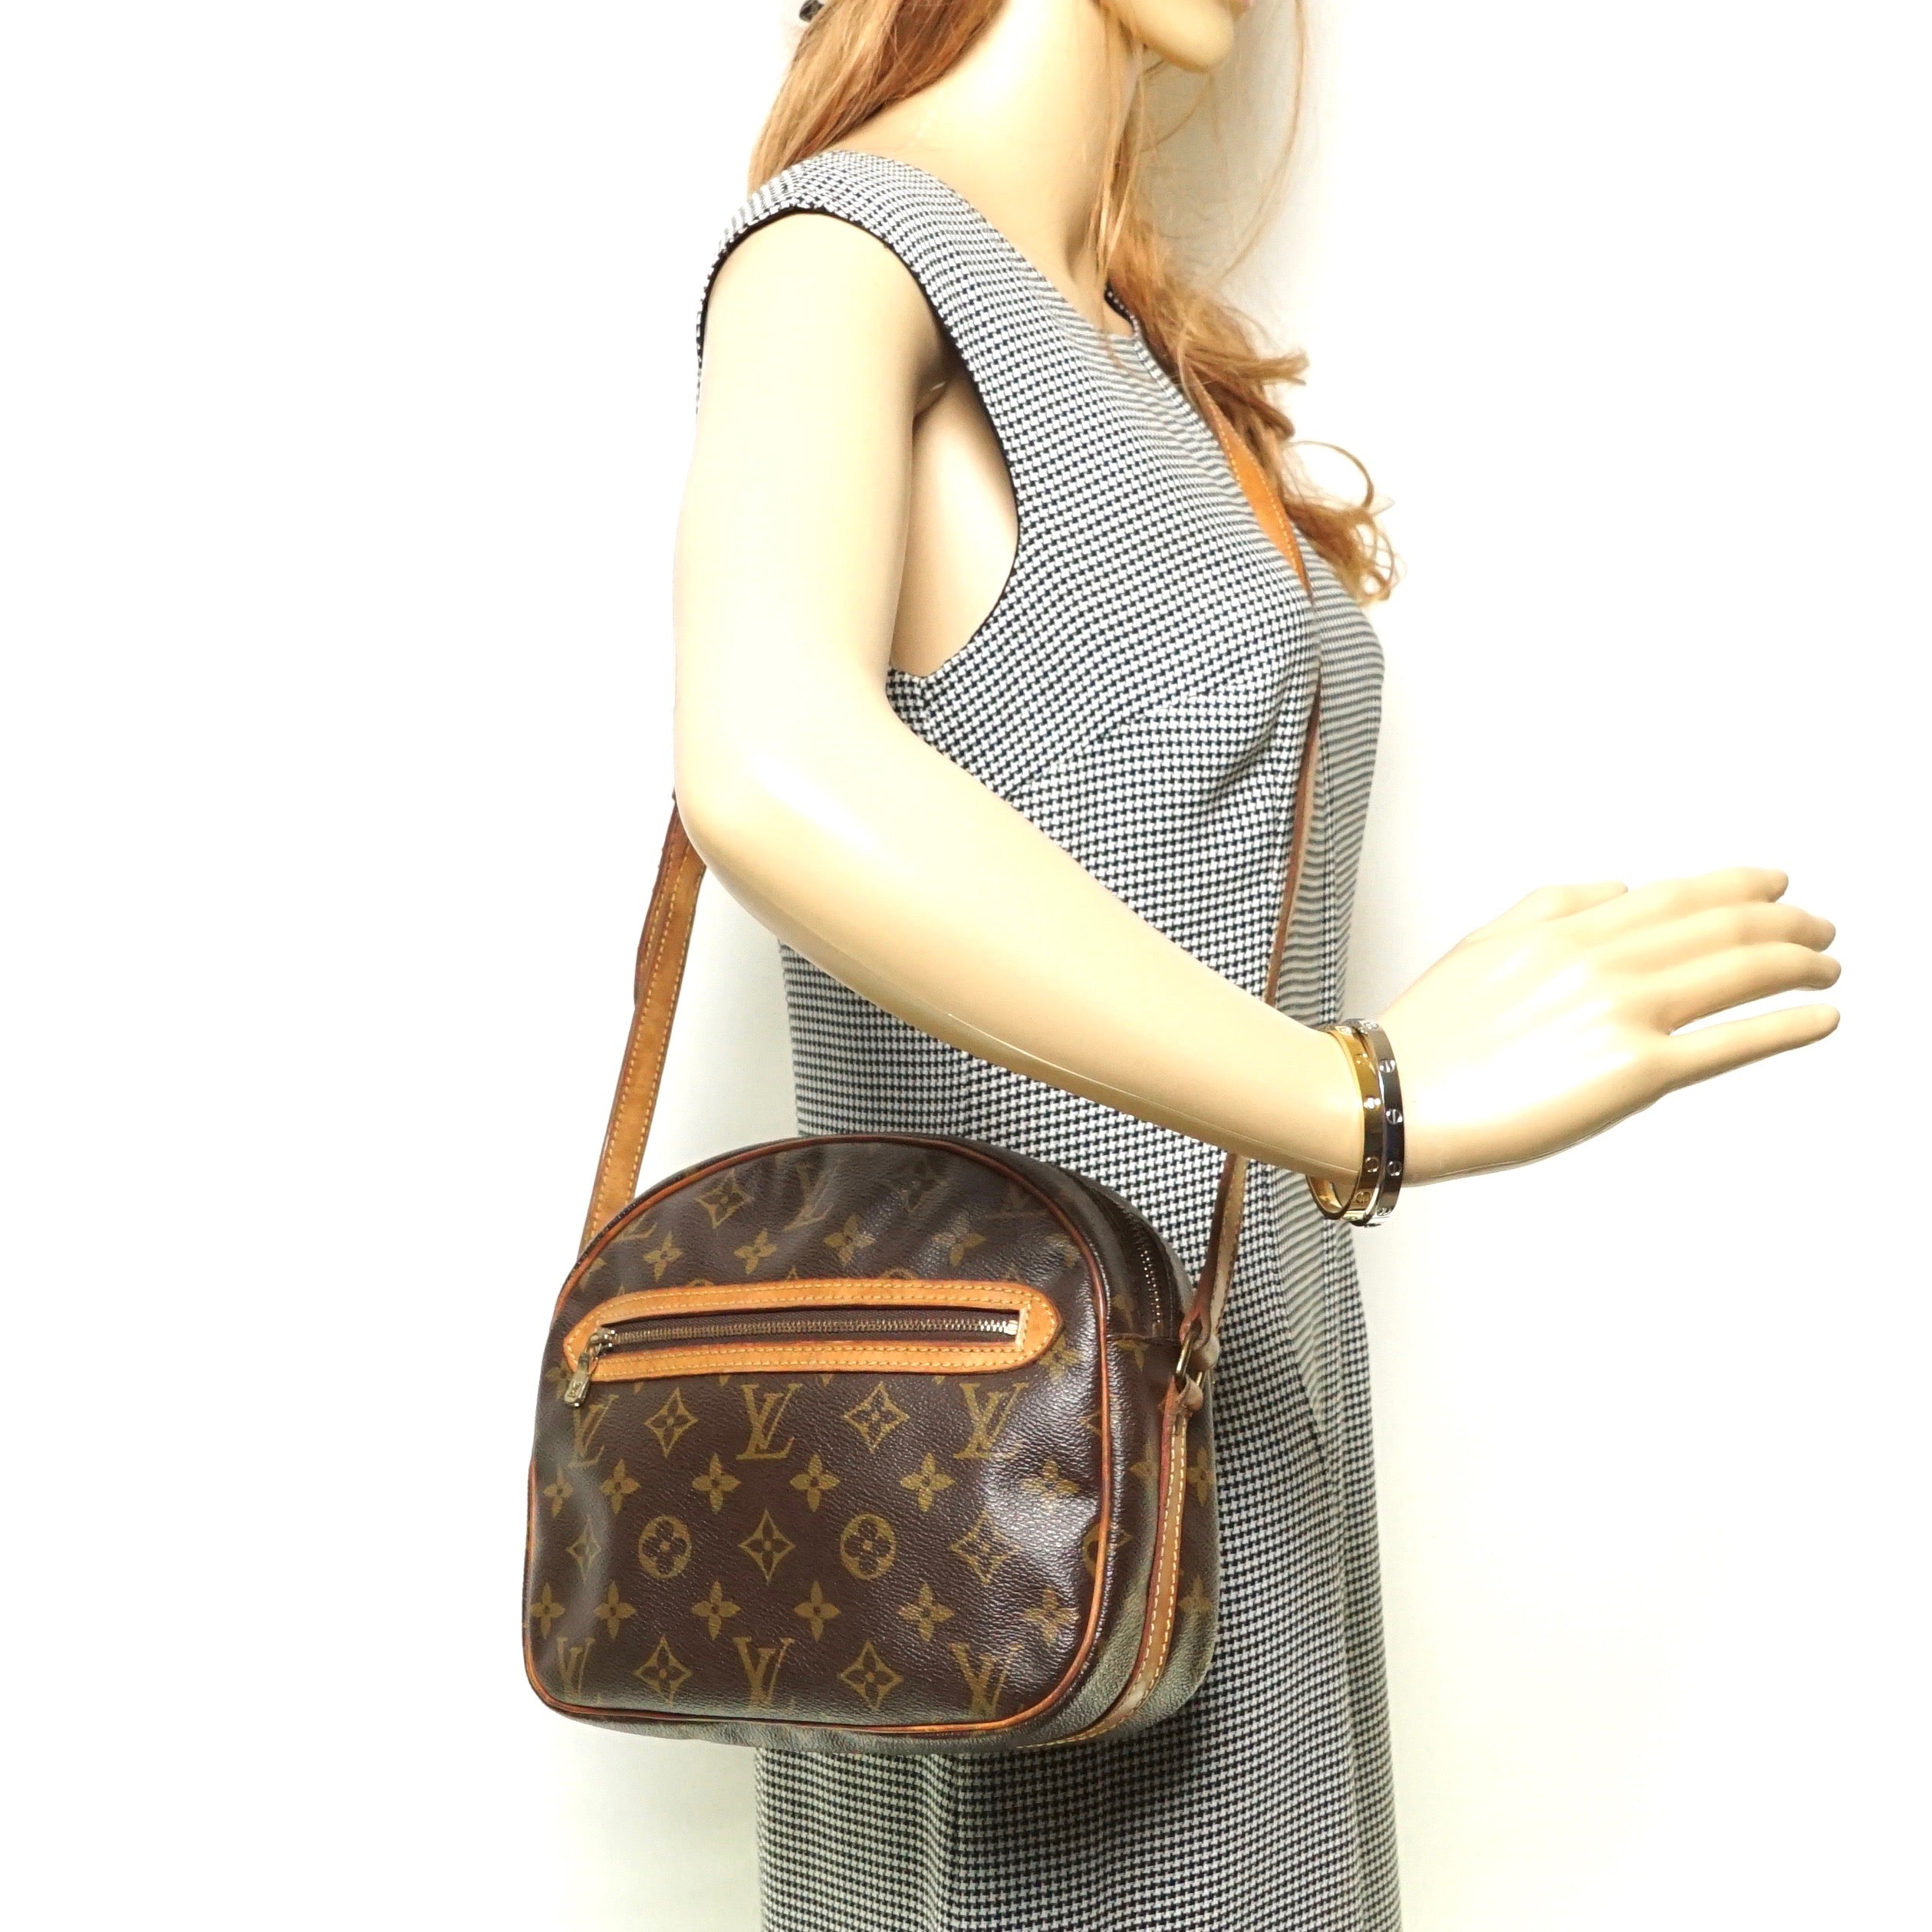 Senlis cloth handbag Louis Vuitton Beige in Cloth - 29506481